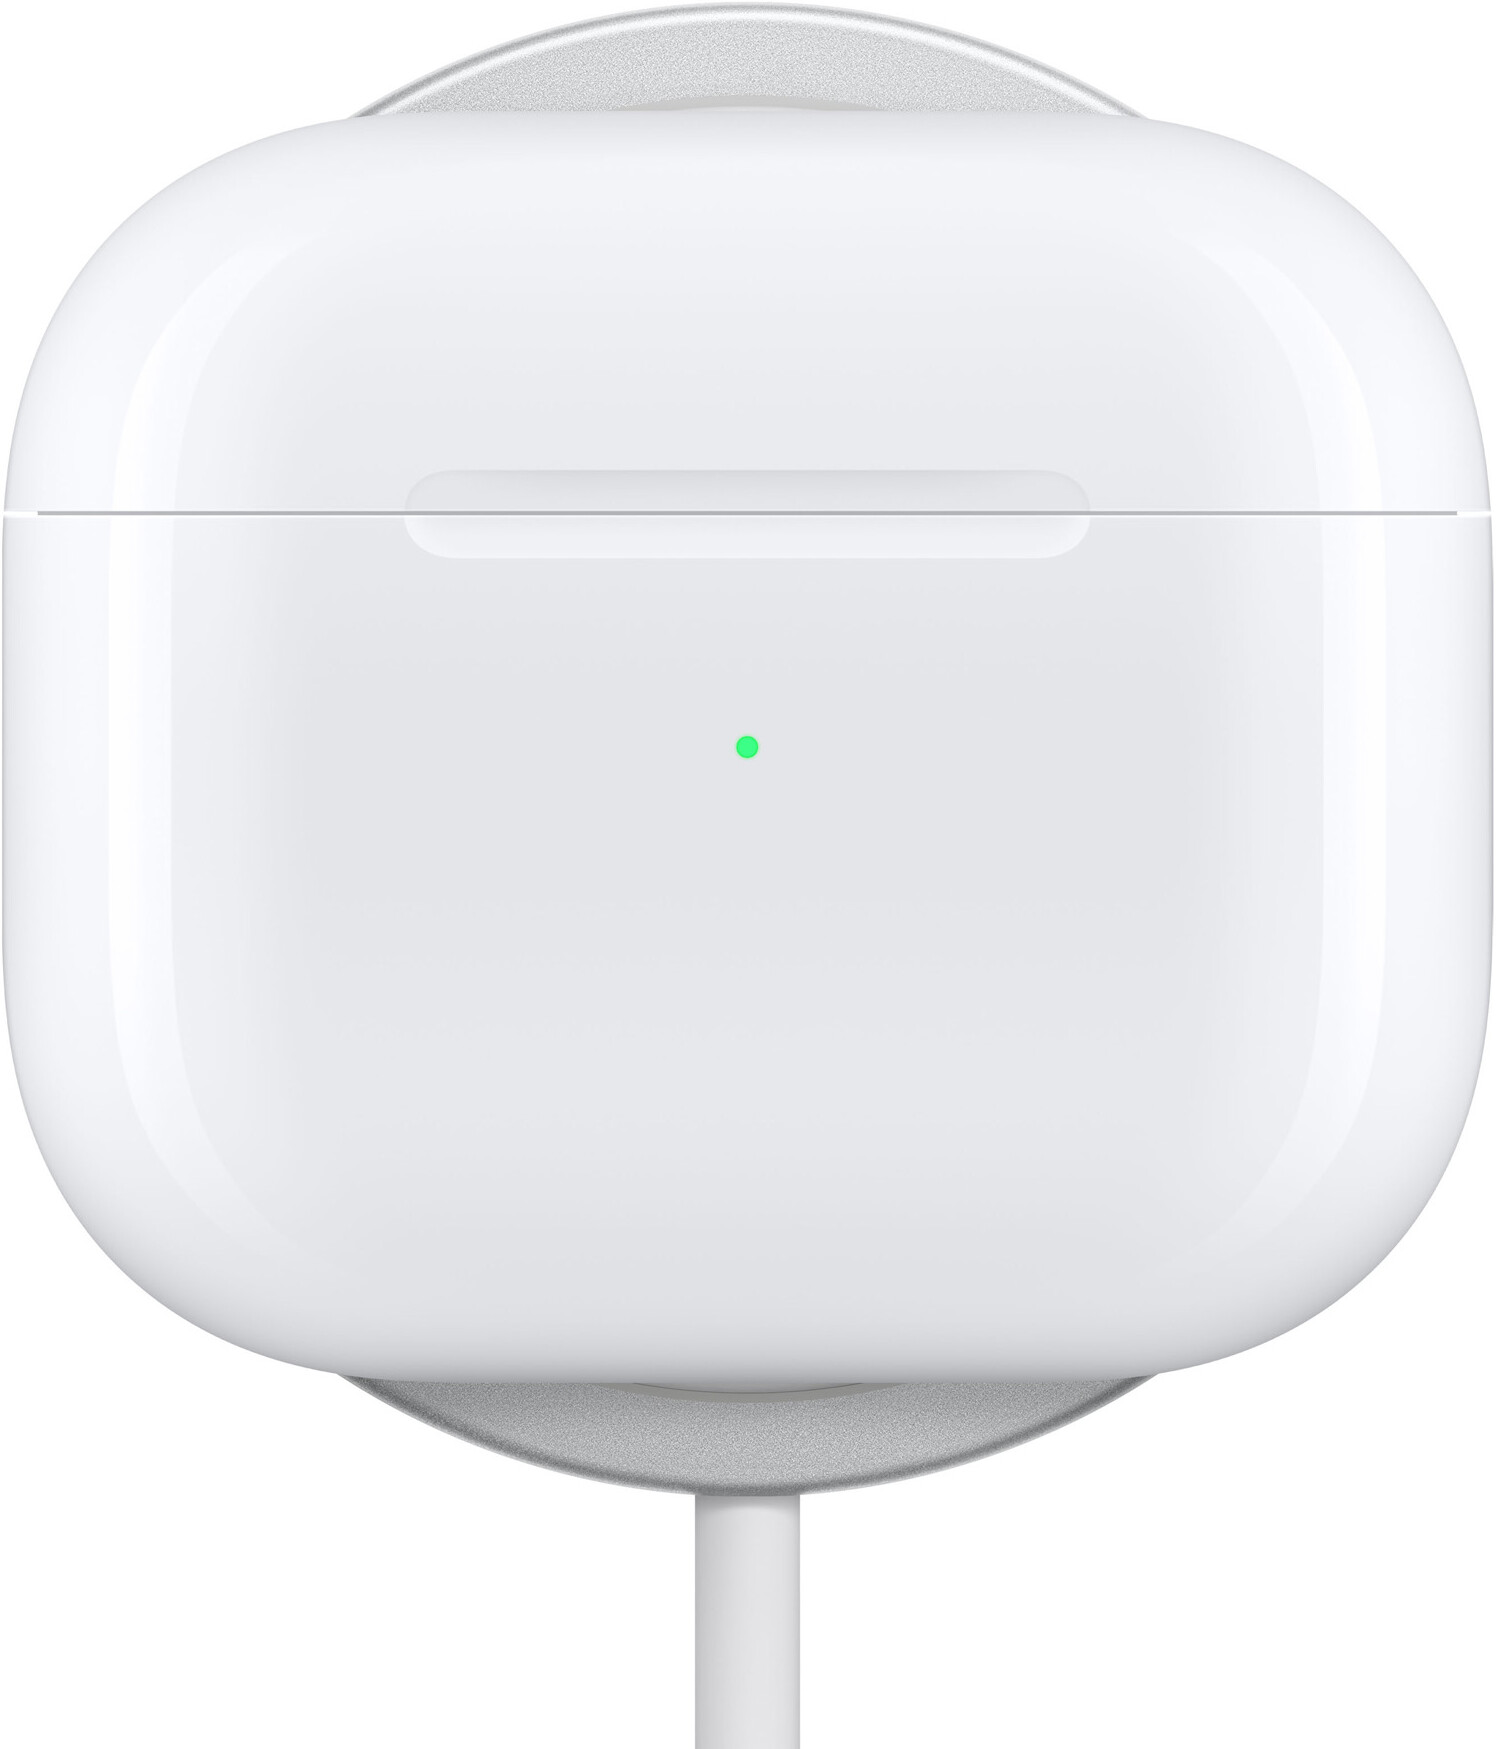 Apple AirPods 3rd Generation Wireless In-ear